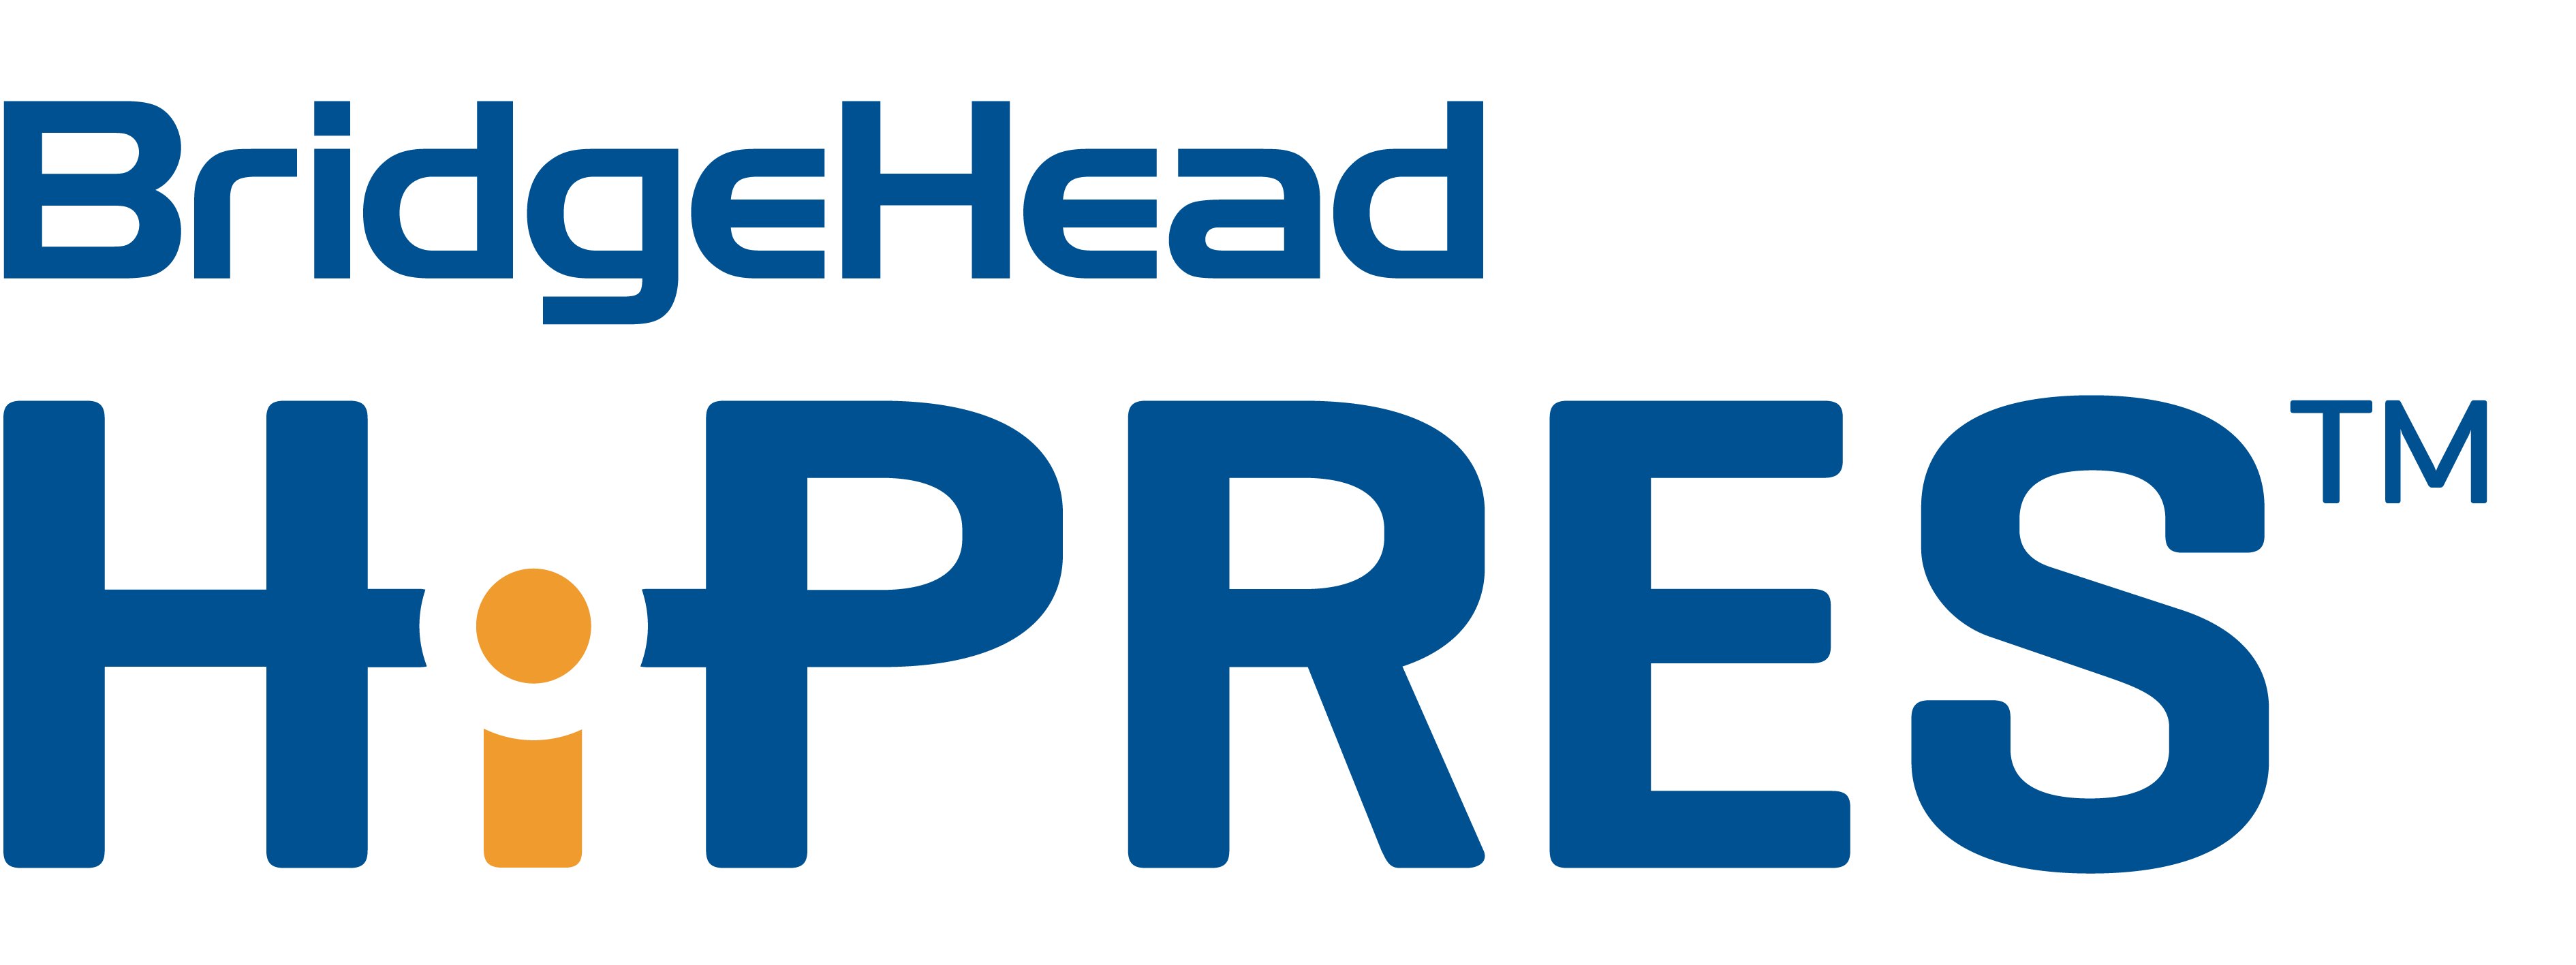 BridgeHead’s HiPRES™ logo